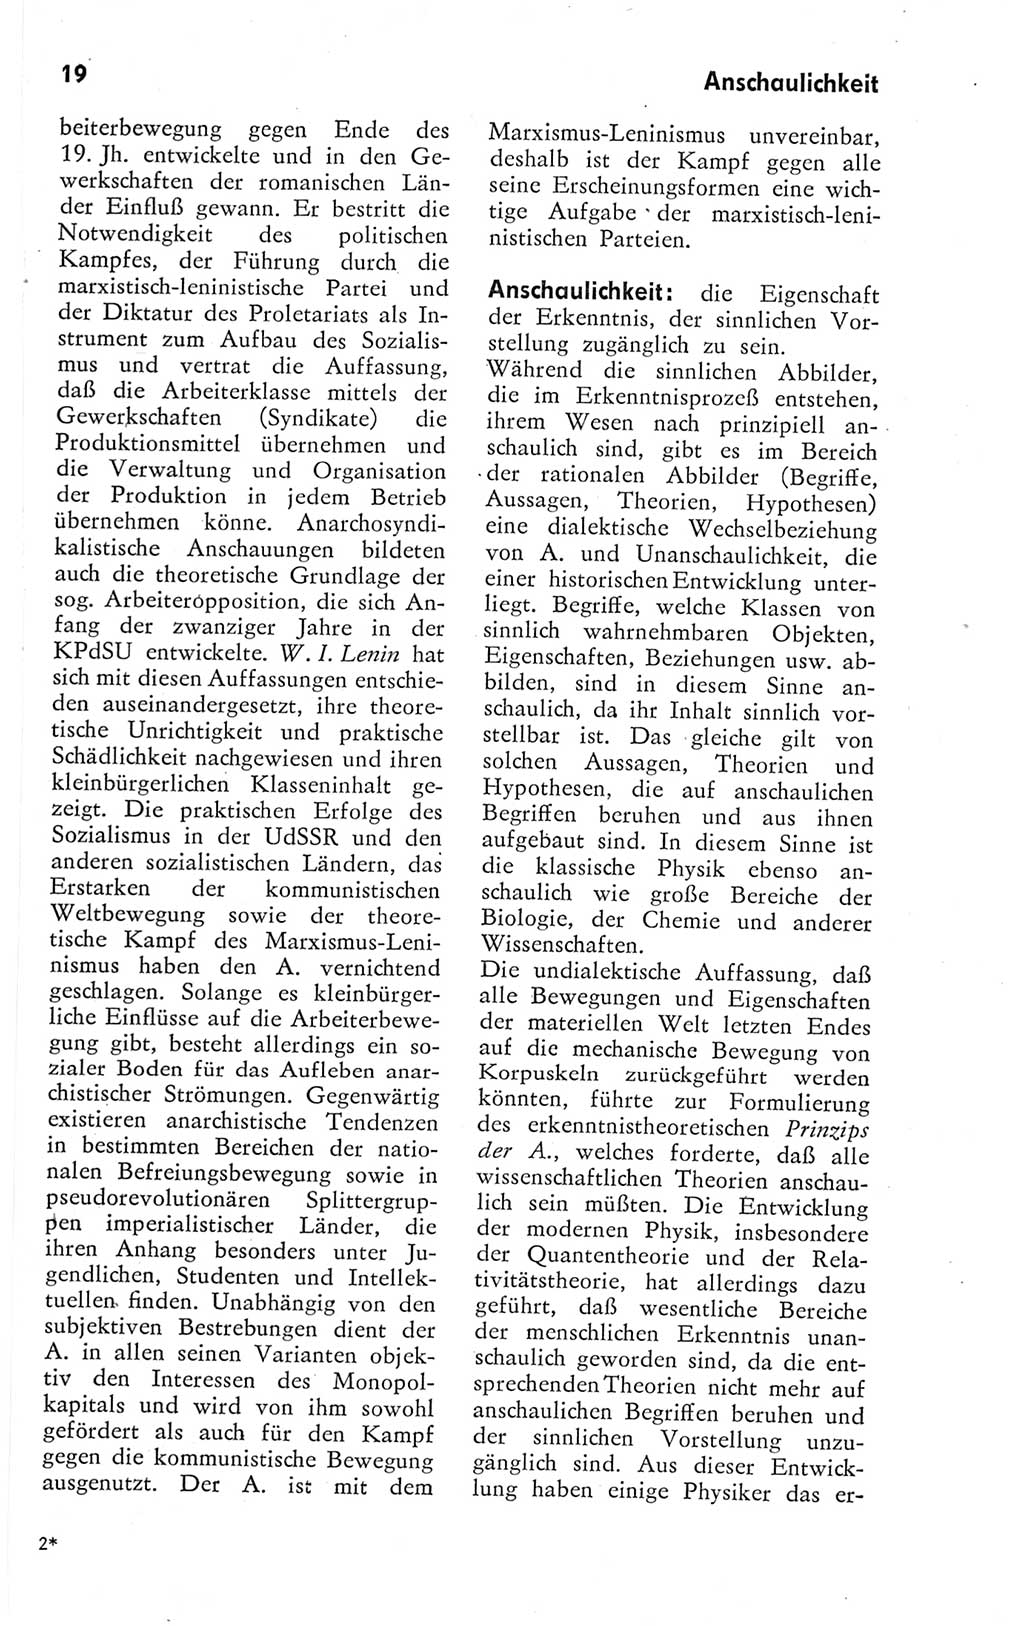 Kleines Wörterbuch der marxistisch-leninistischen Philosophie [Deutsche Demokratische Republik (DDR)] 1974, Seite 19 (Kl. Wb. ML Phil. DDR 1974, S. 19)